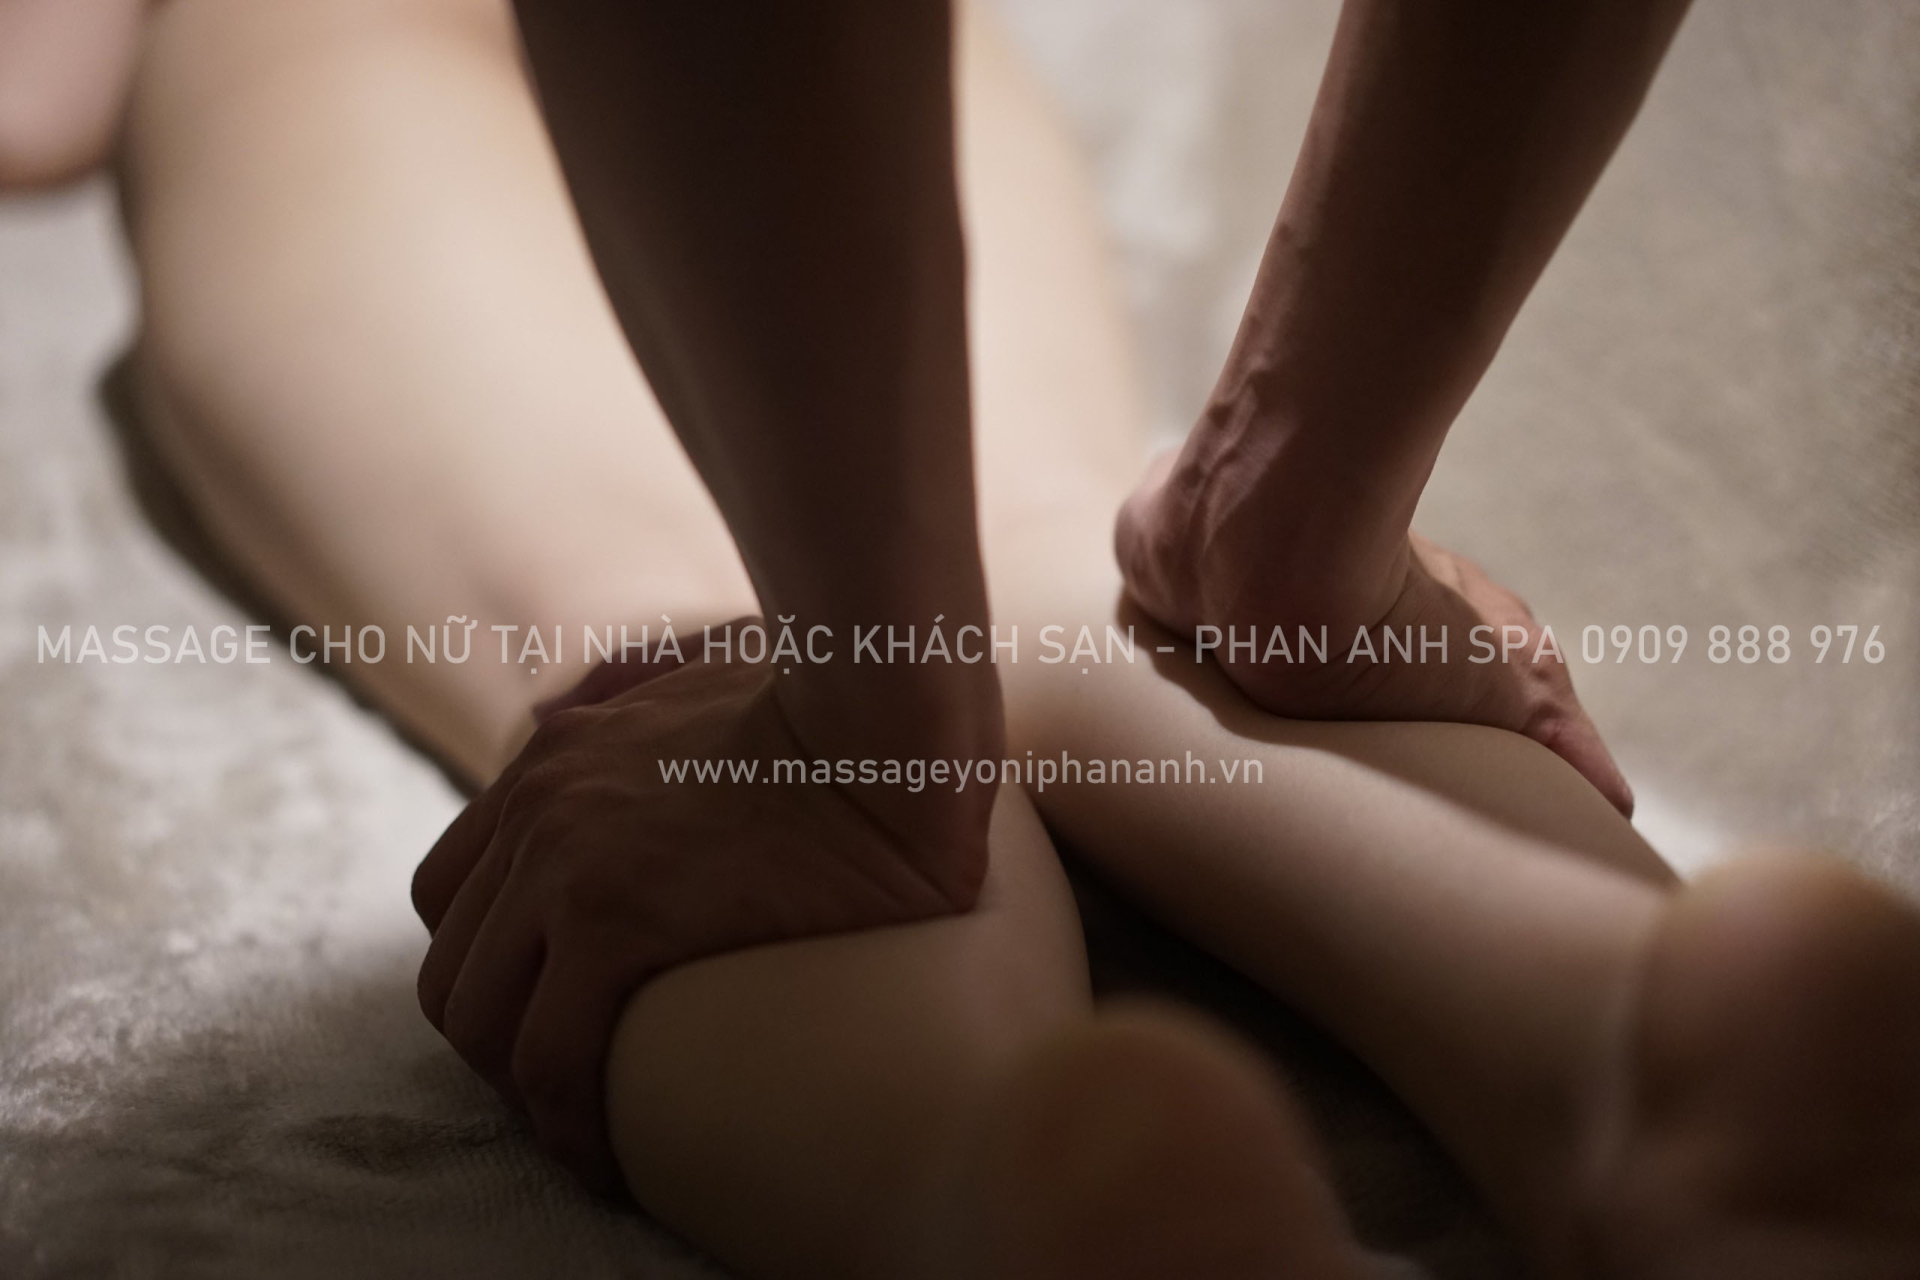 Dịch vụ massage cho nữ tại nhà hoặc khách sạn